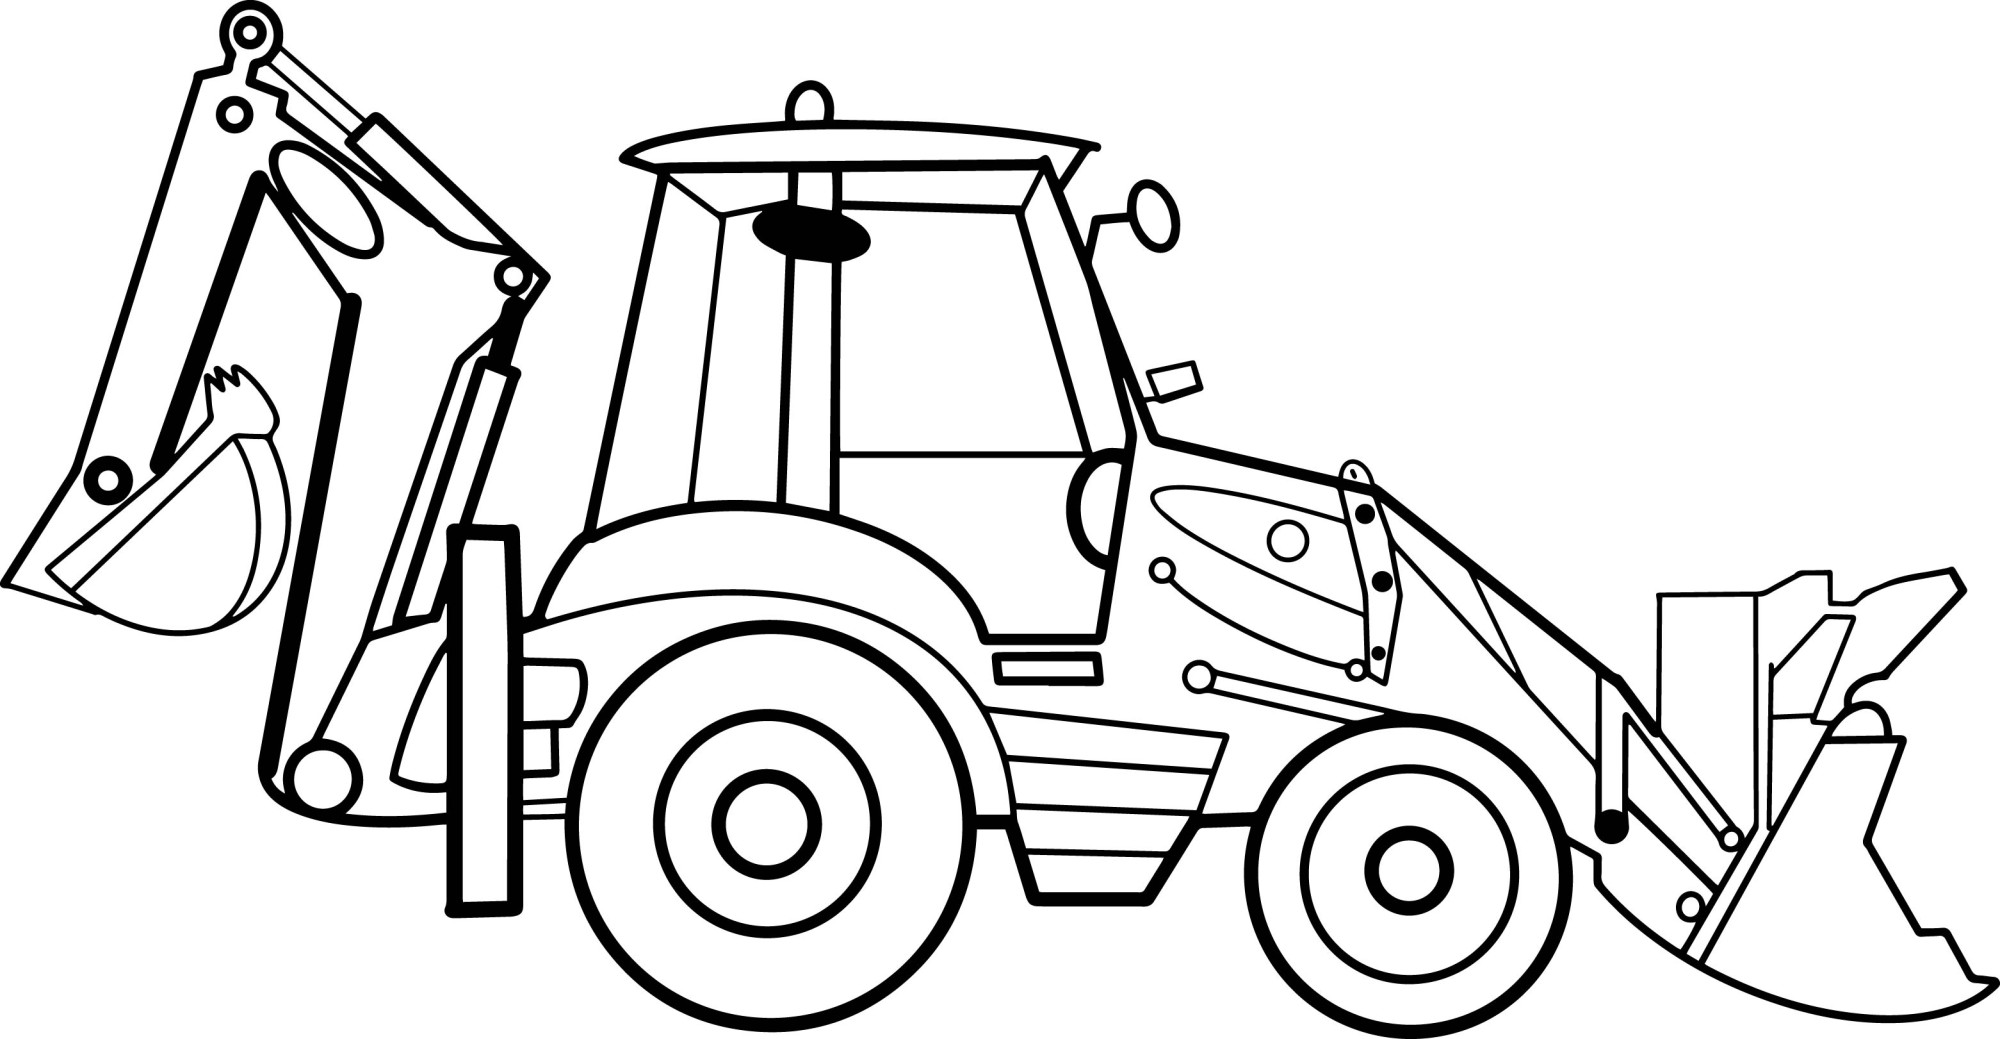 Раскраска для детей: трактор экскаватор с ковшом